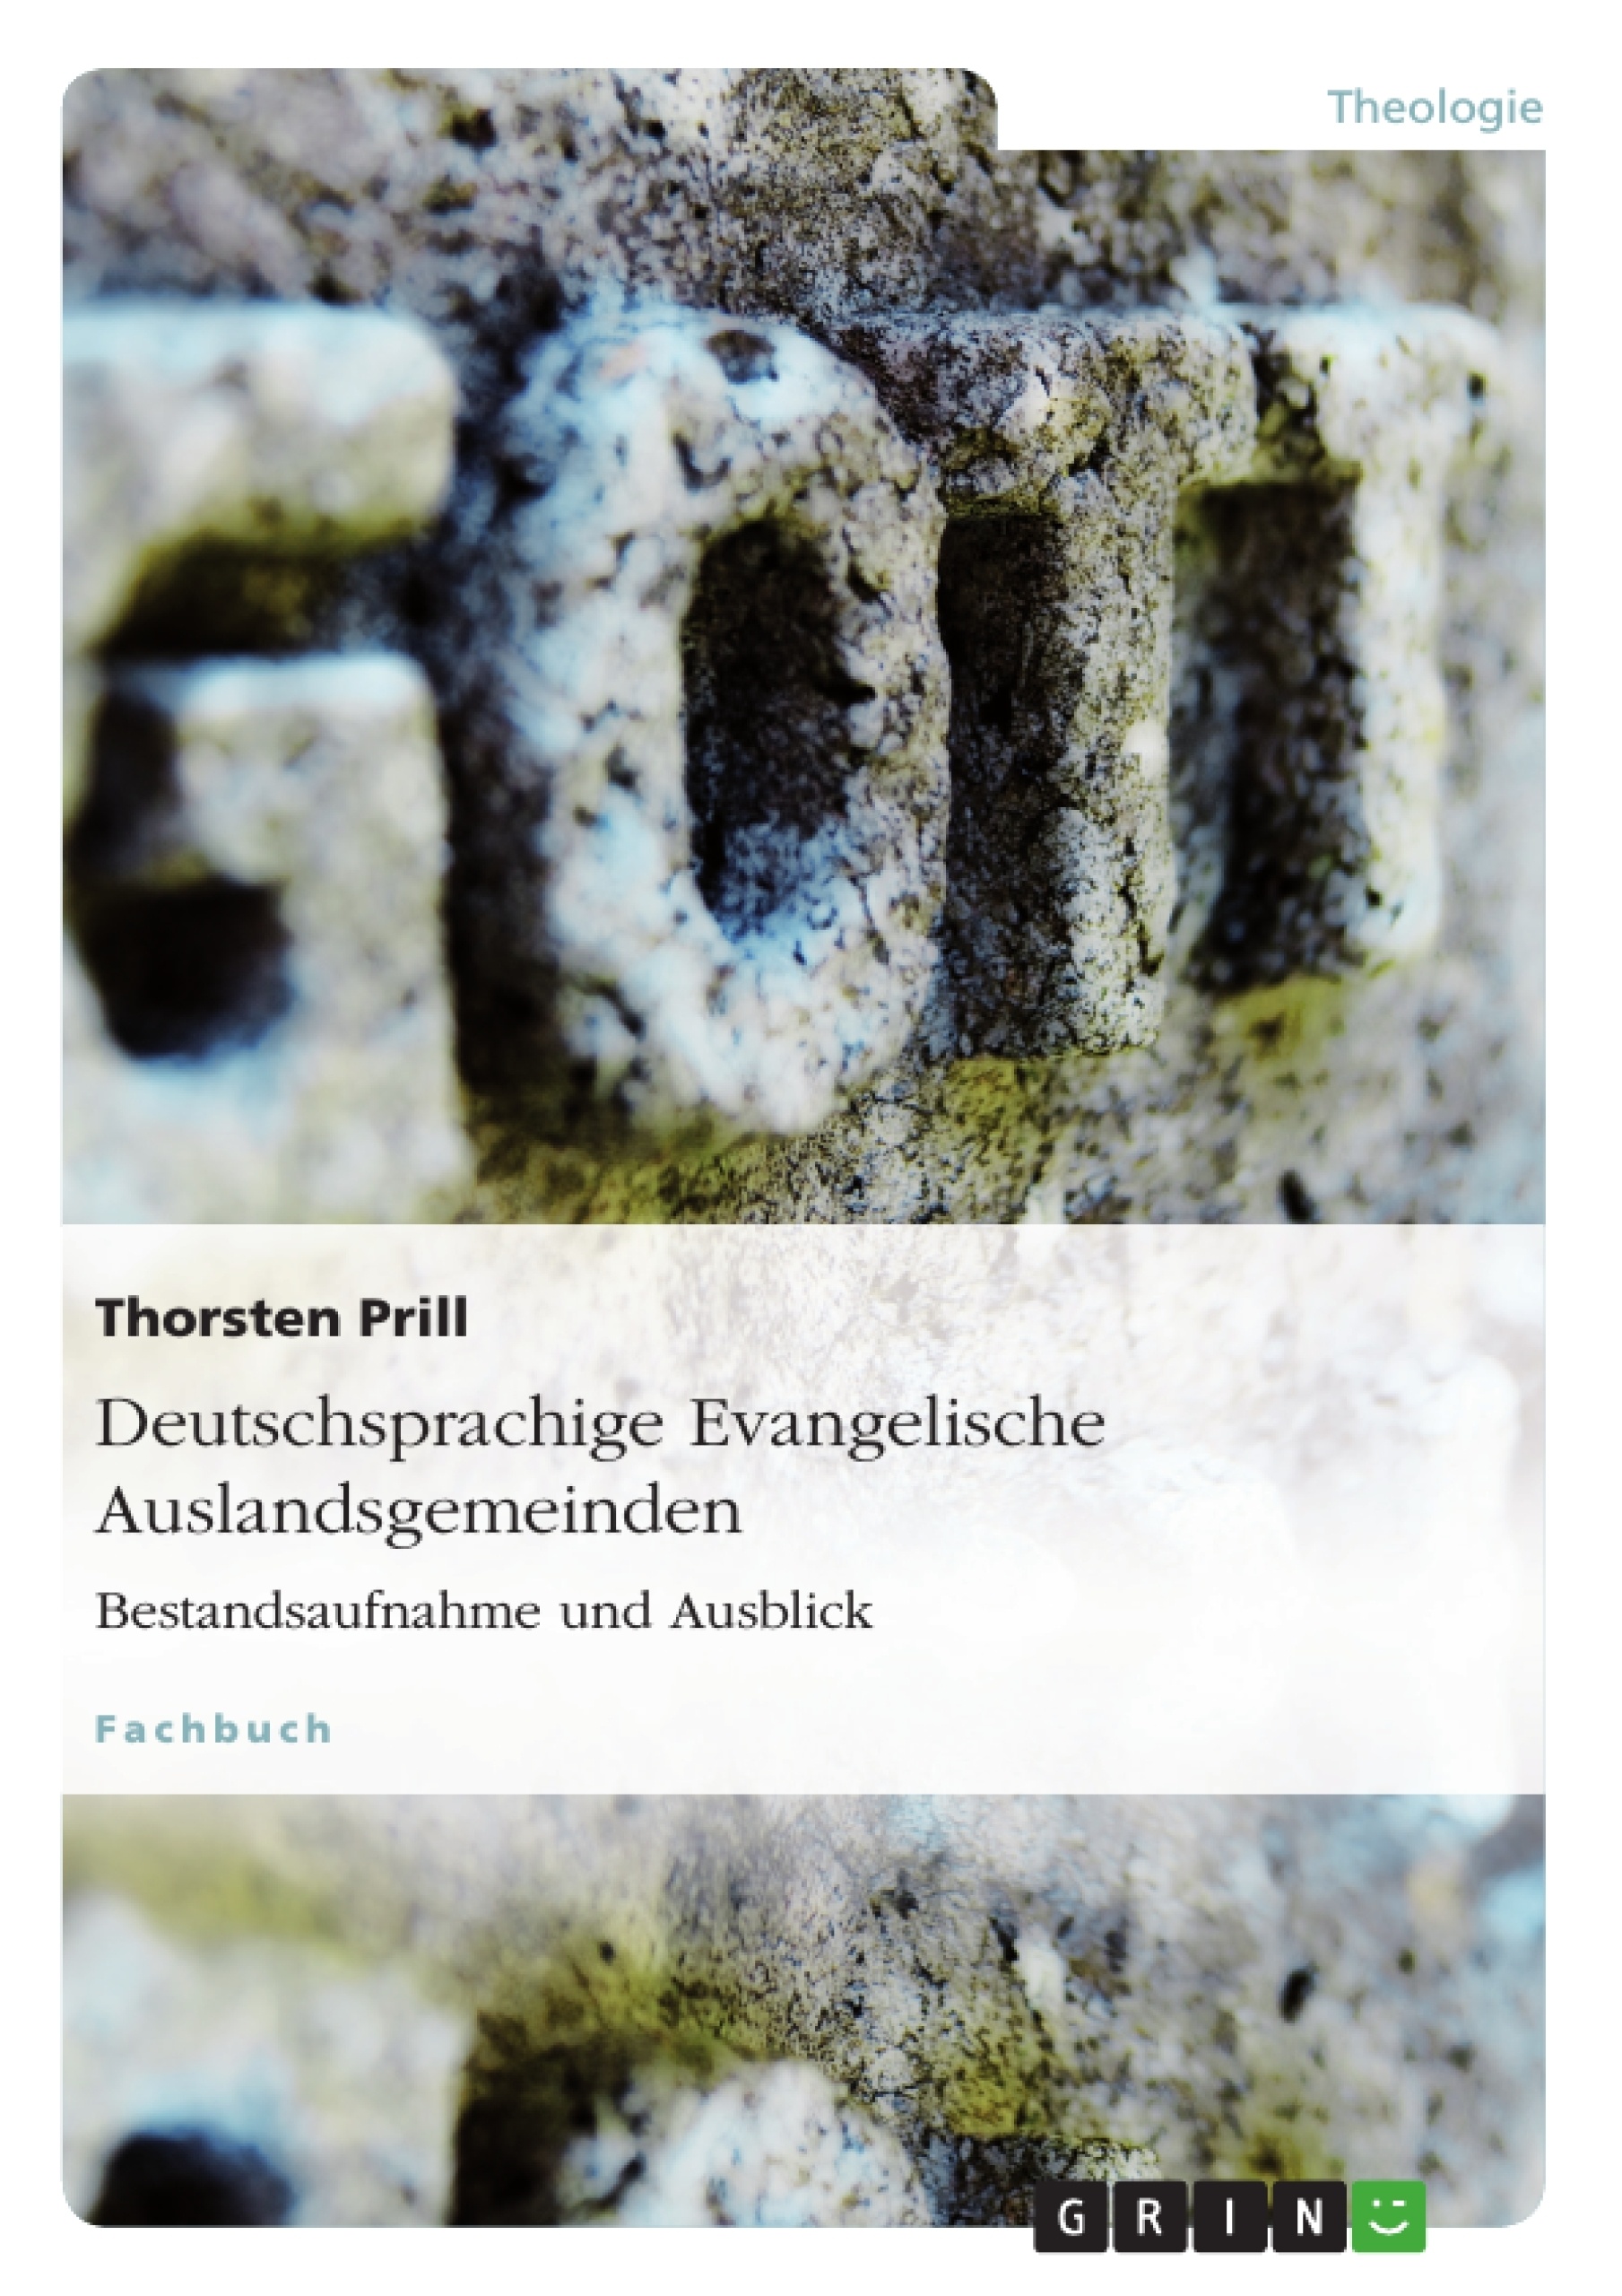 Title: Deutschsprachige Evangelische Auslandsgemeinden. Bestandsaufnahme und Ausblick